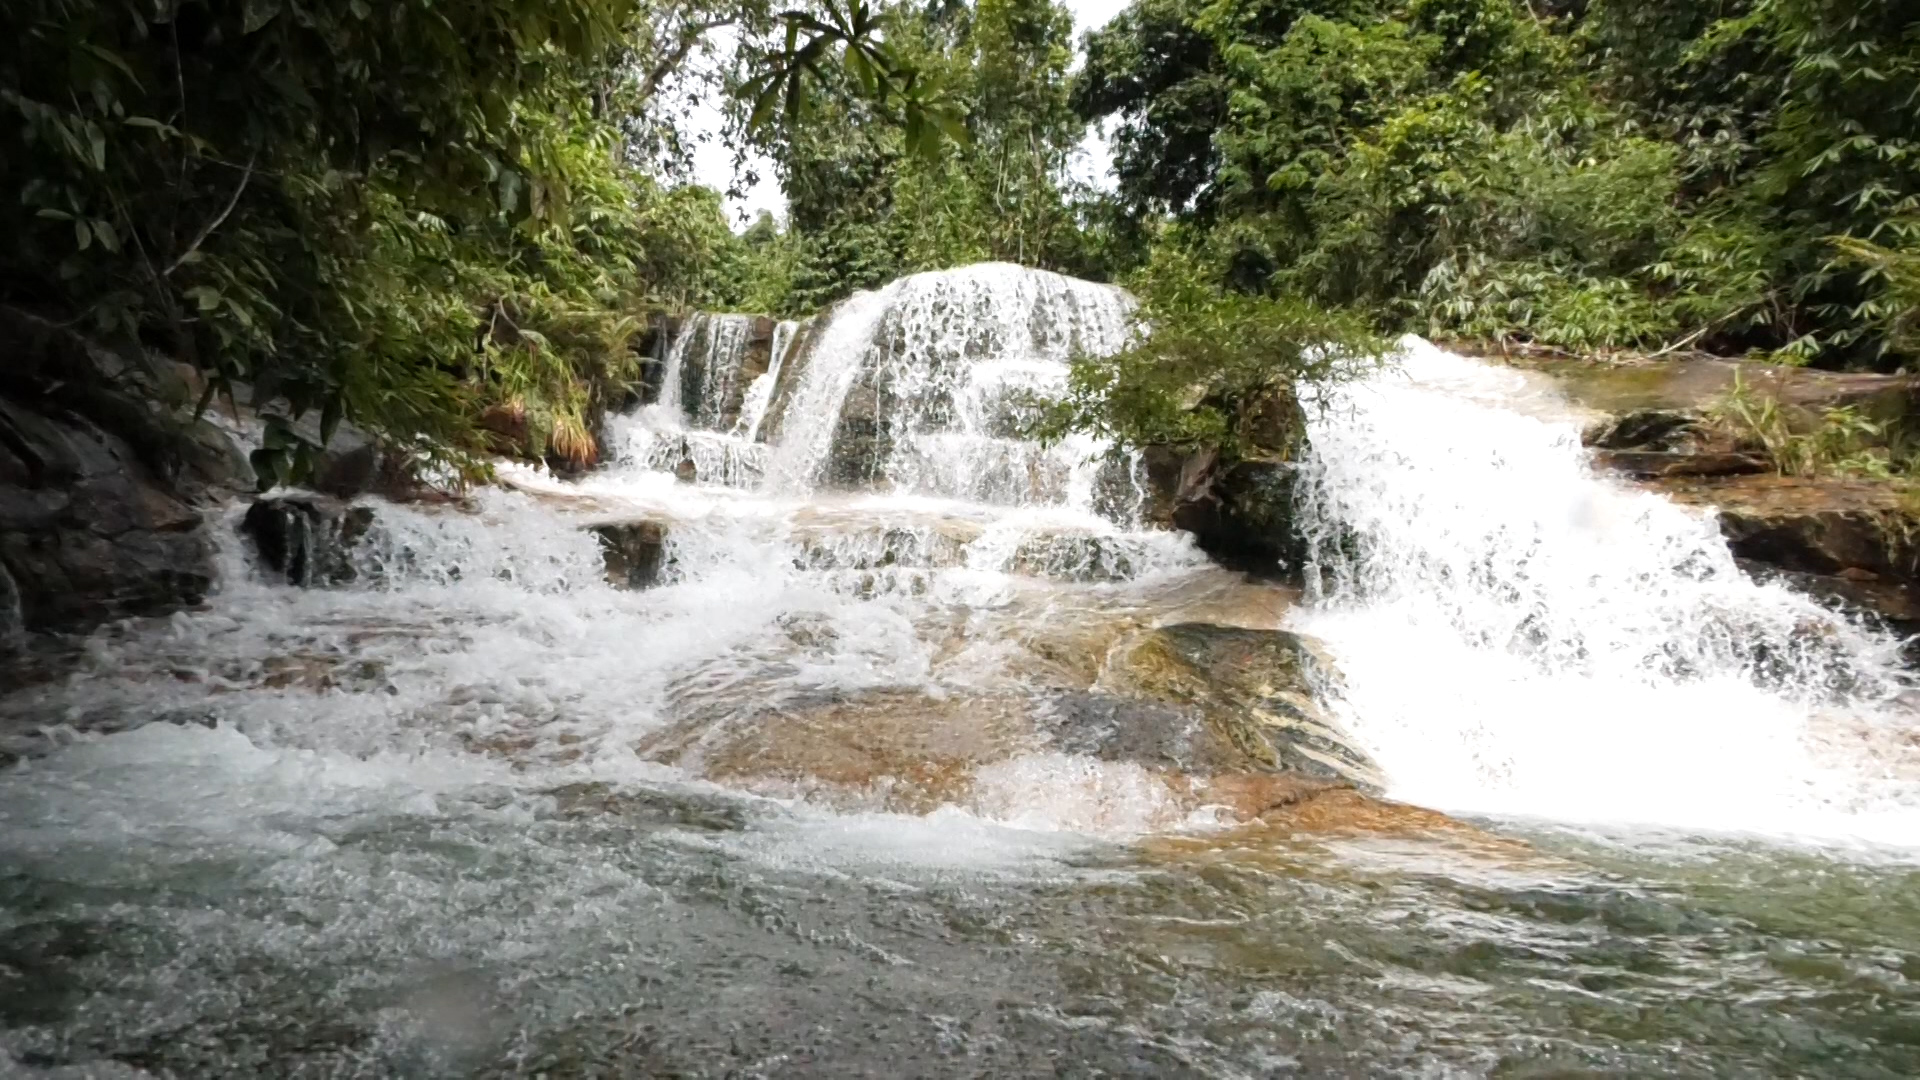 Đây là thác nước đẹp như phim ở Thanh Hóa, có lan rừng thơm, dưới suối vô số cá, tôm lạ mắt- Ảnh 1.